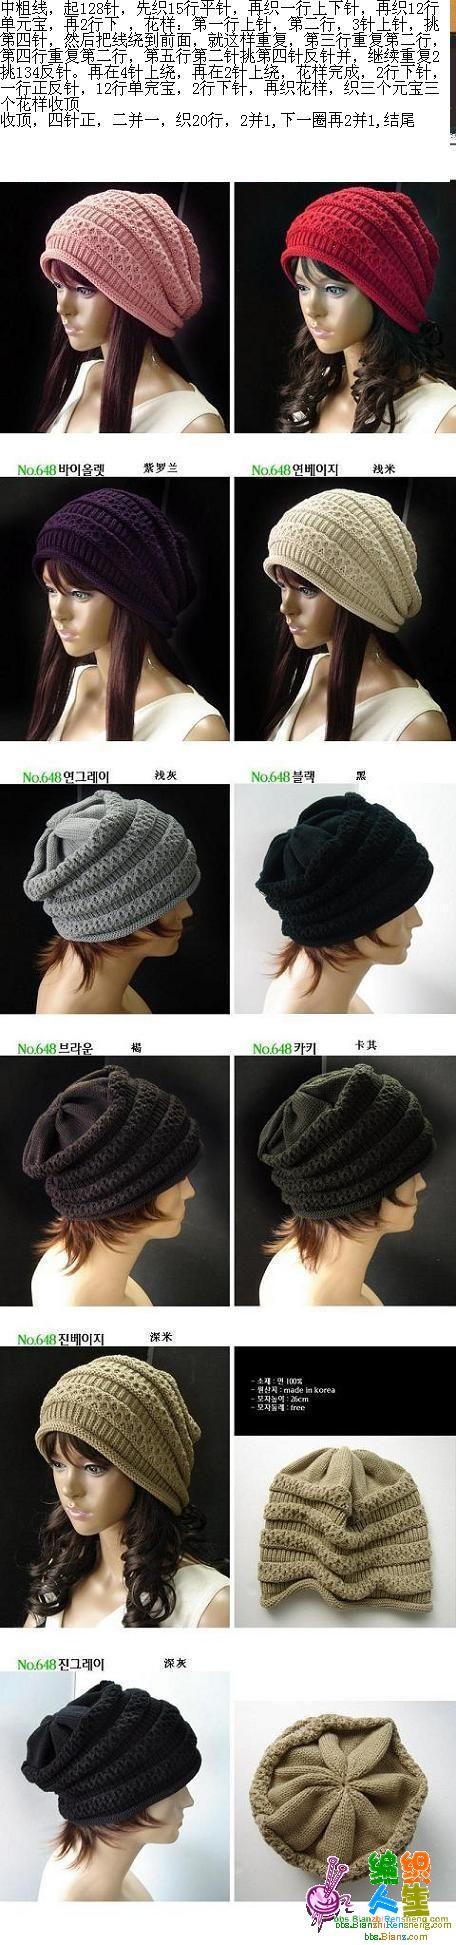 韩版帽子,附详细的织法说明